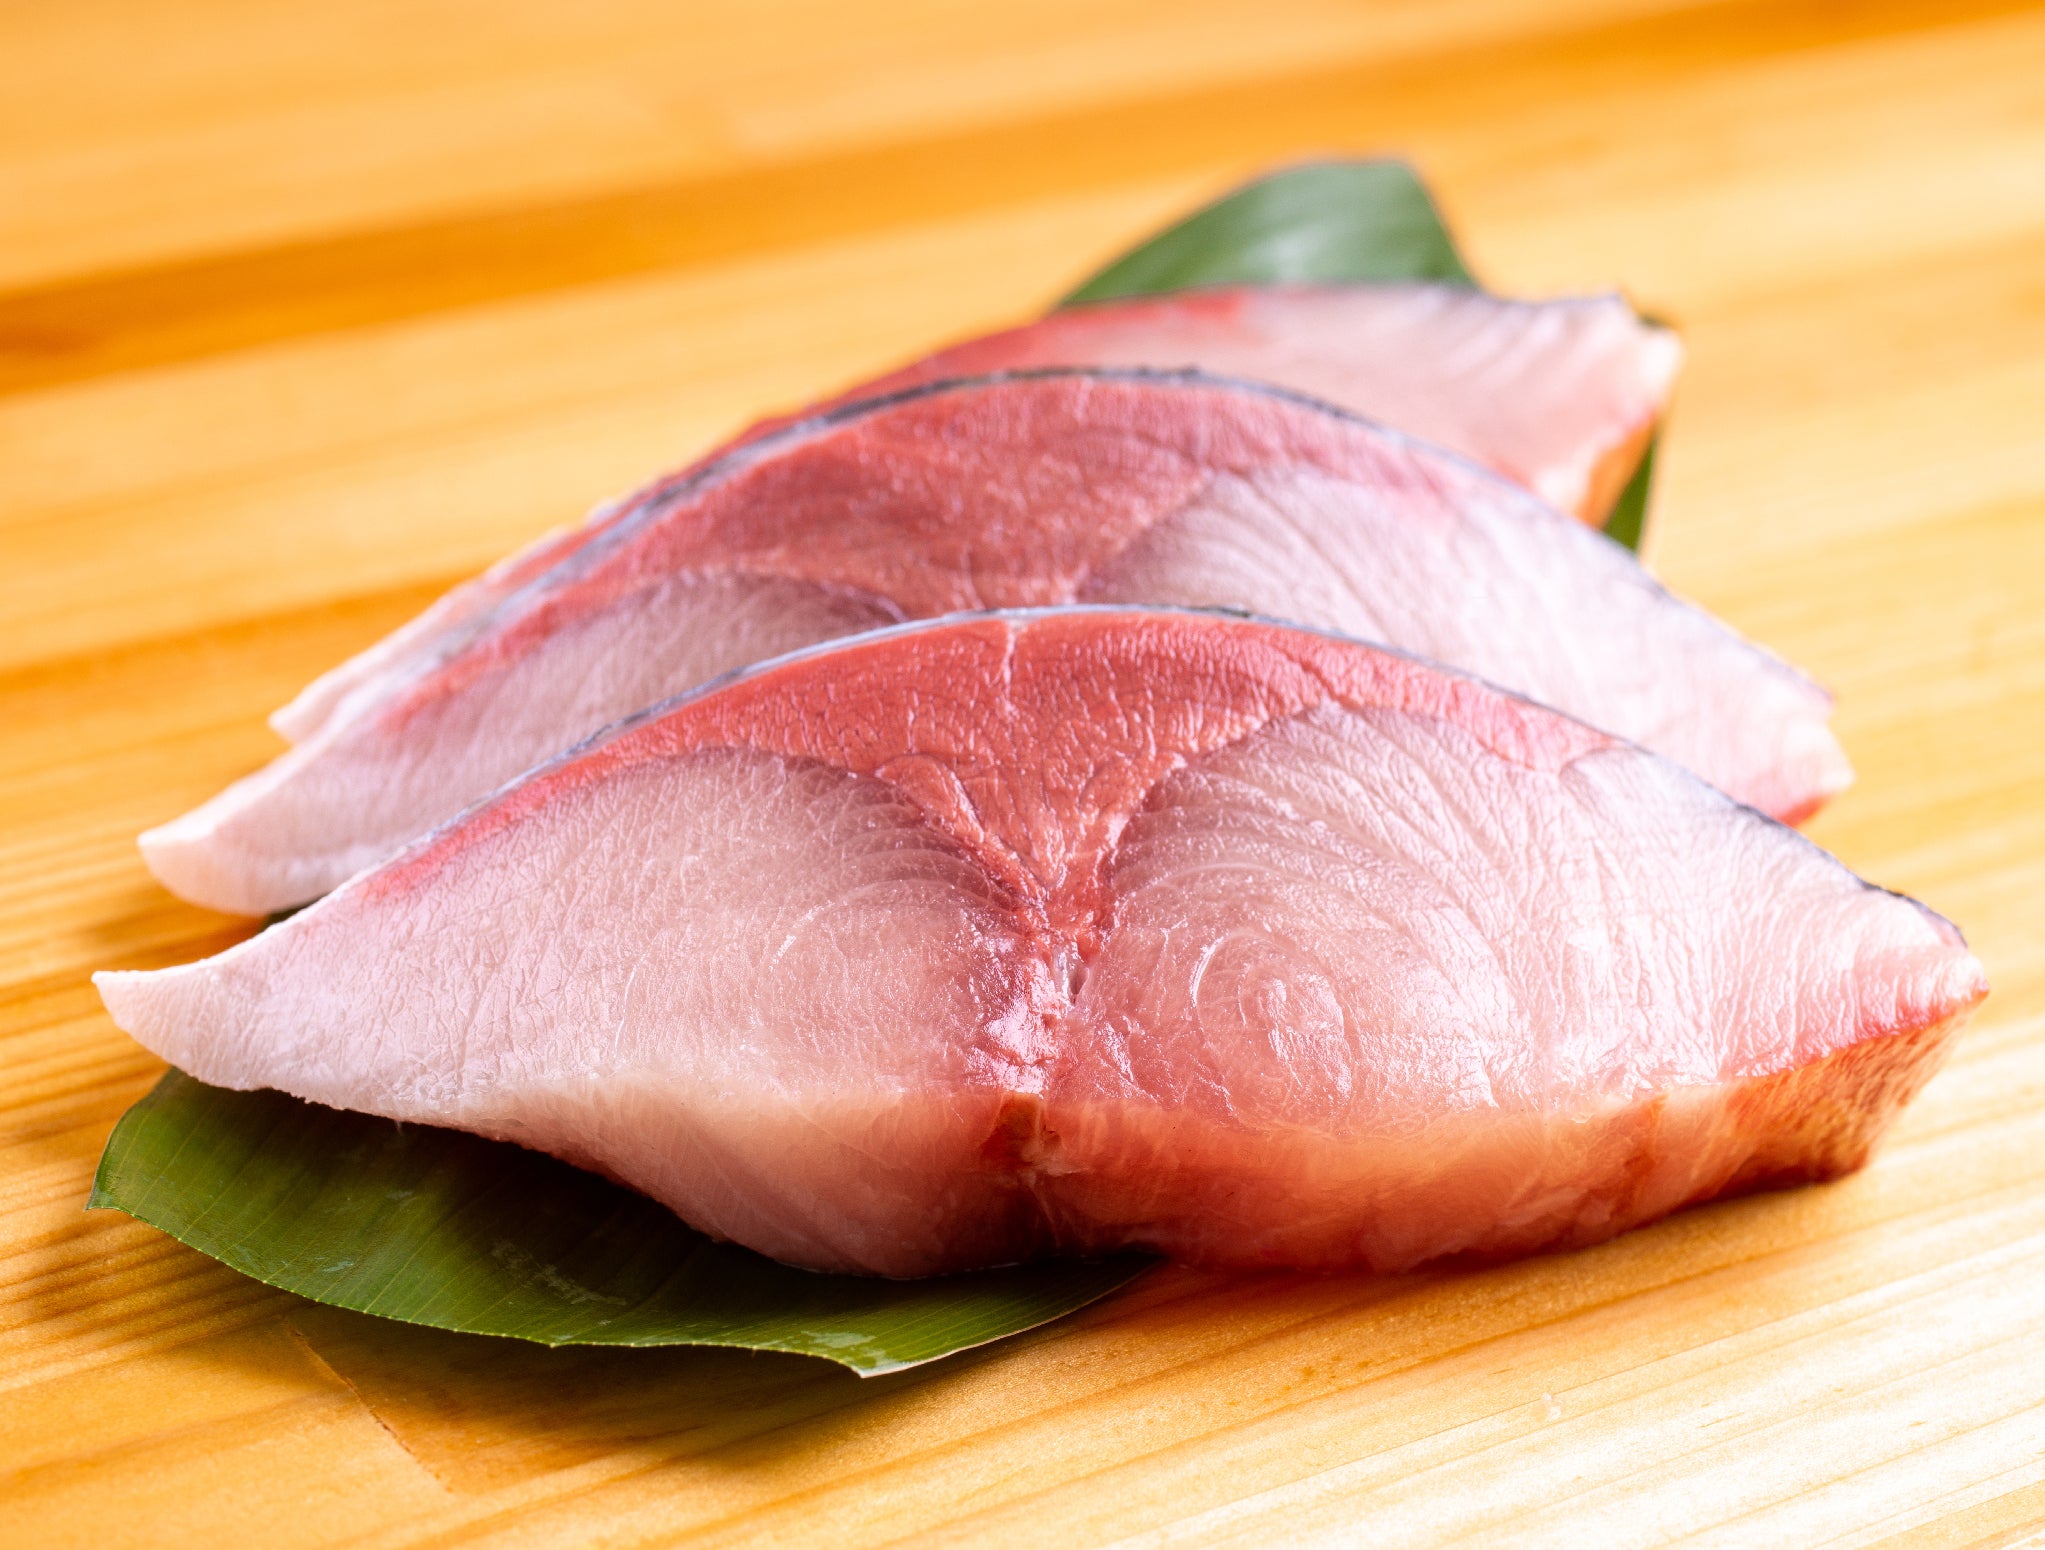 Frozen Hamachi Loin (Sashimi Quality) 1.75 LB